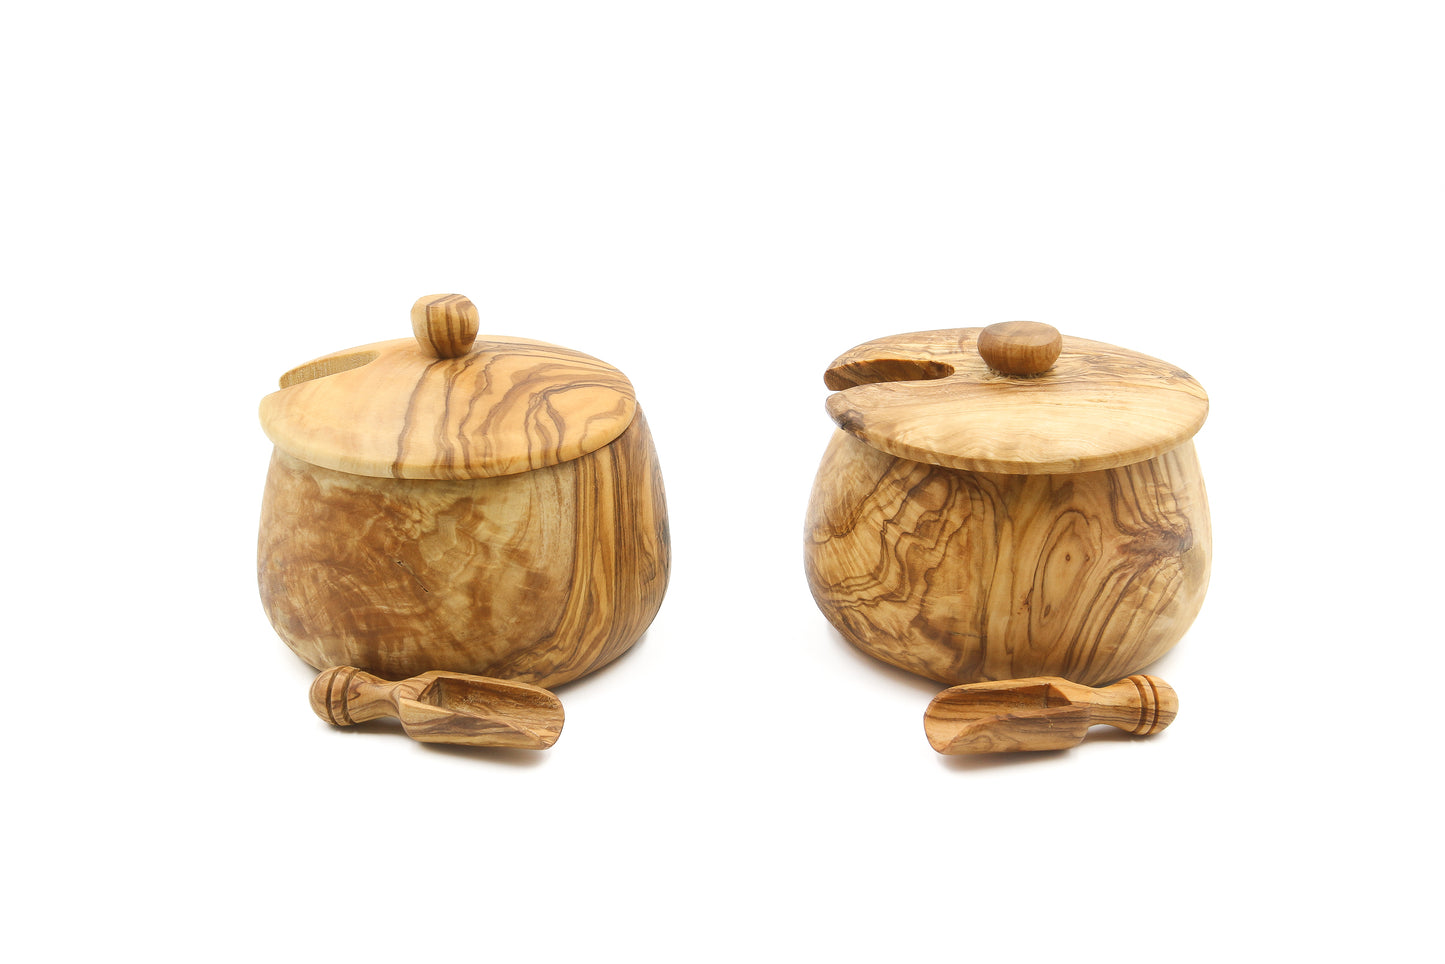 Natural olive wood vessel for salt and sugar